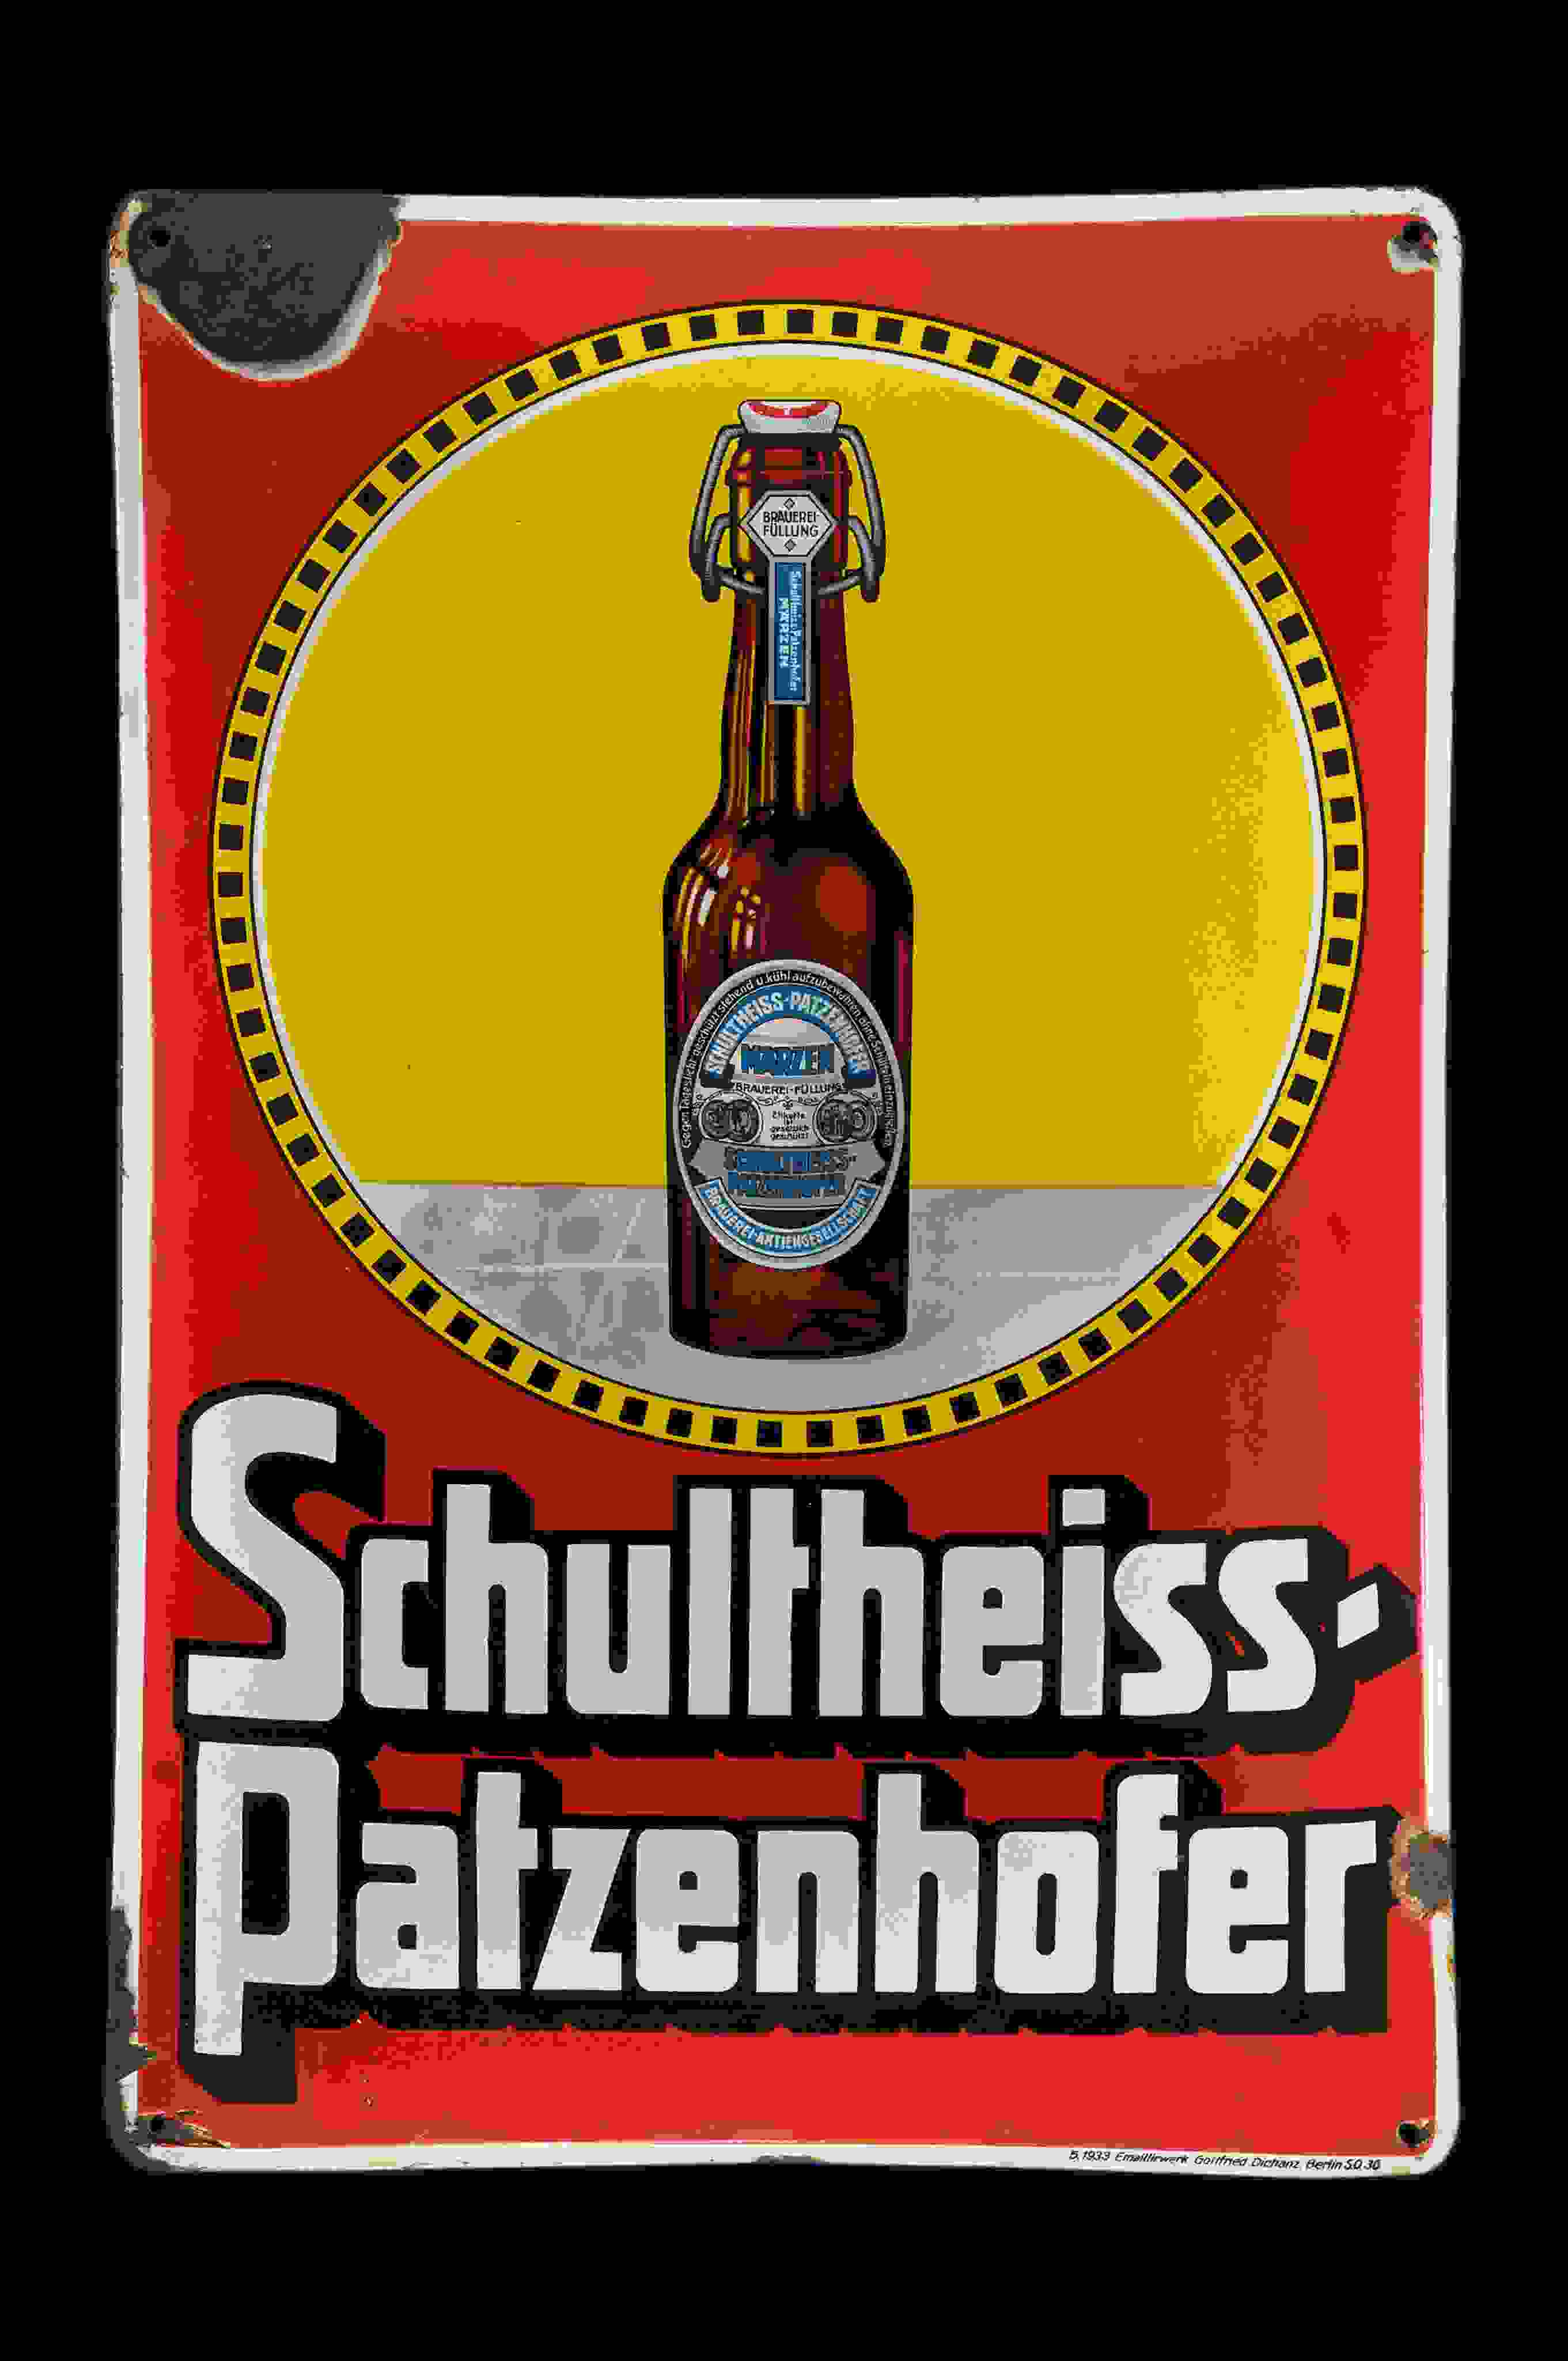 Schultheiss-Patzenhofer 